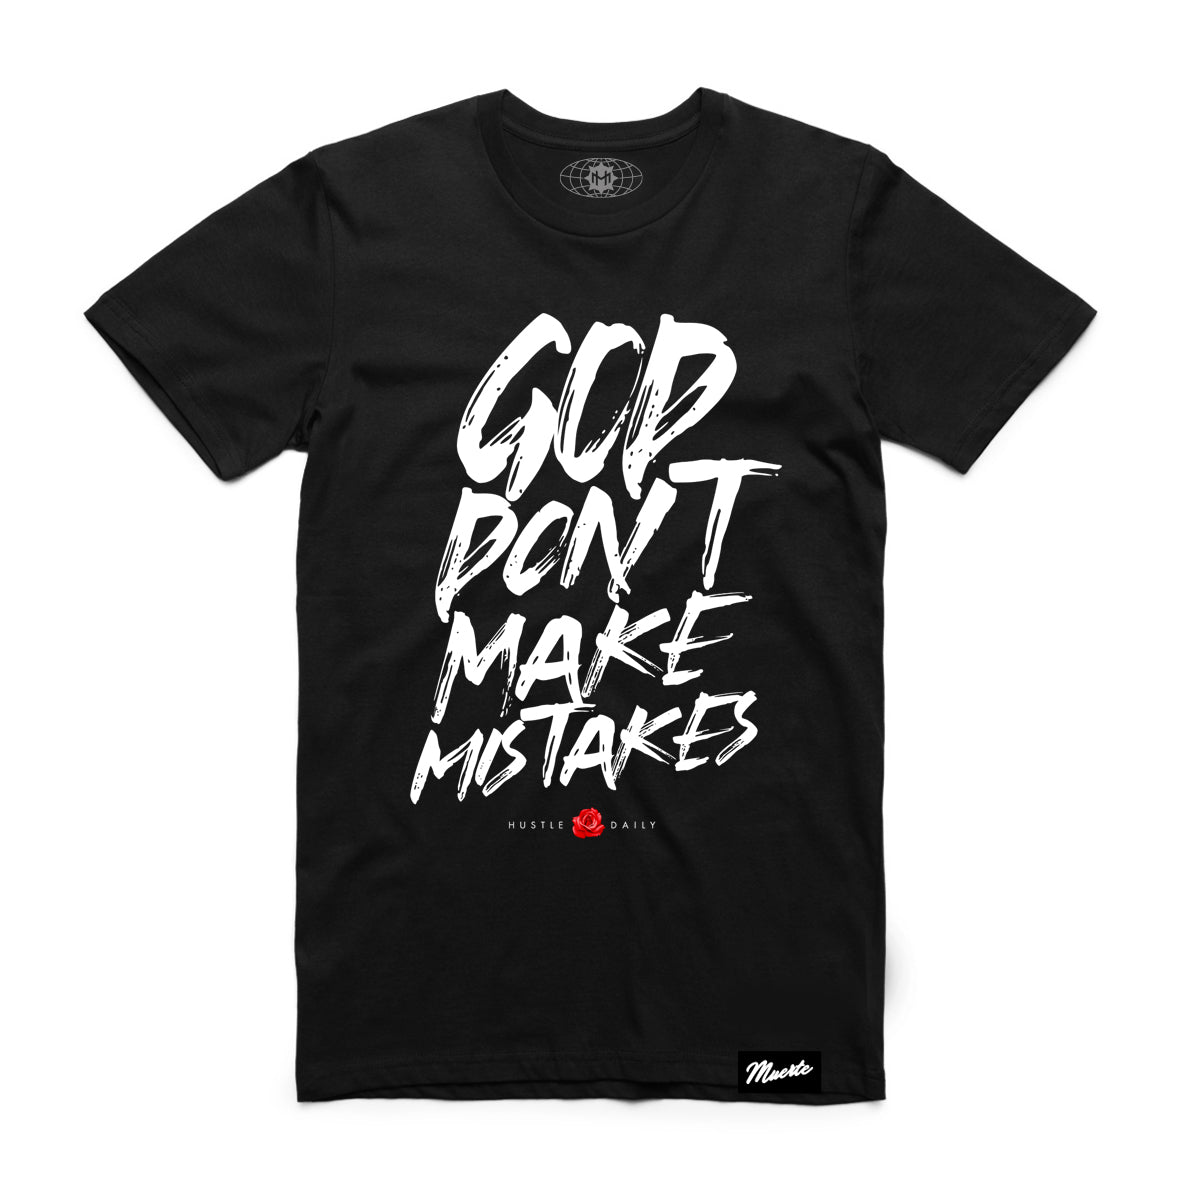 Dios no cometa errores - Negro